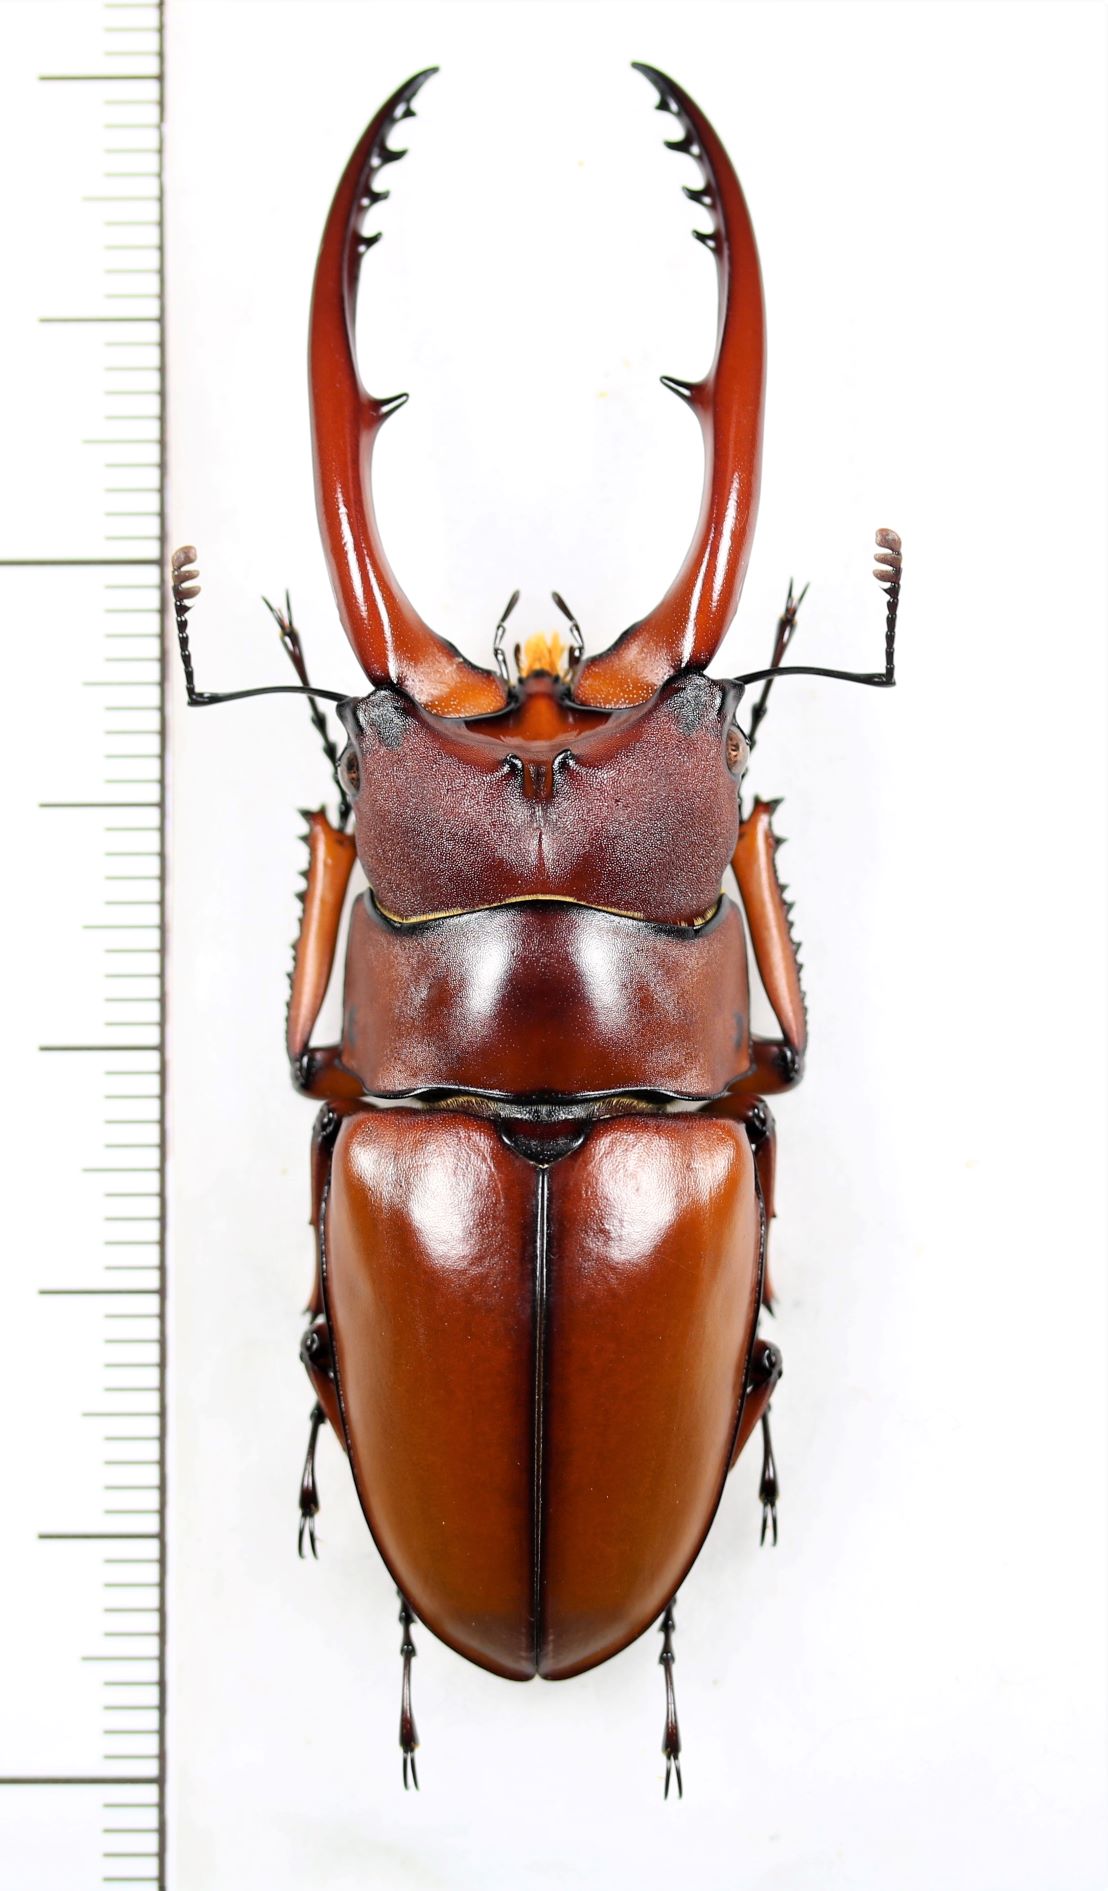 画像1: アスタコイデスノコギリクワガタ  Prosopocoilus astacoides dubernardi　♂66mm　中国雲南省